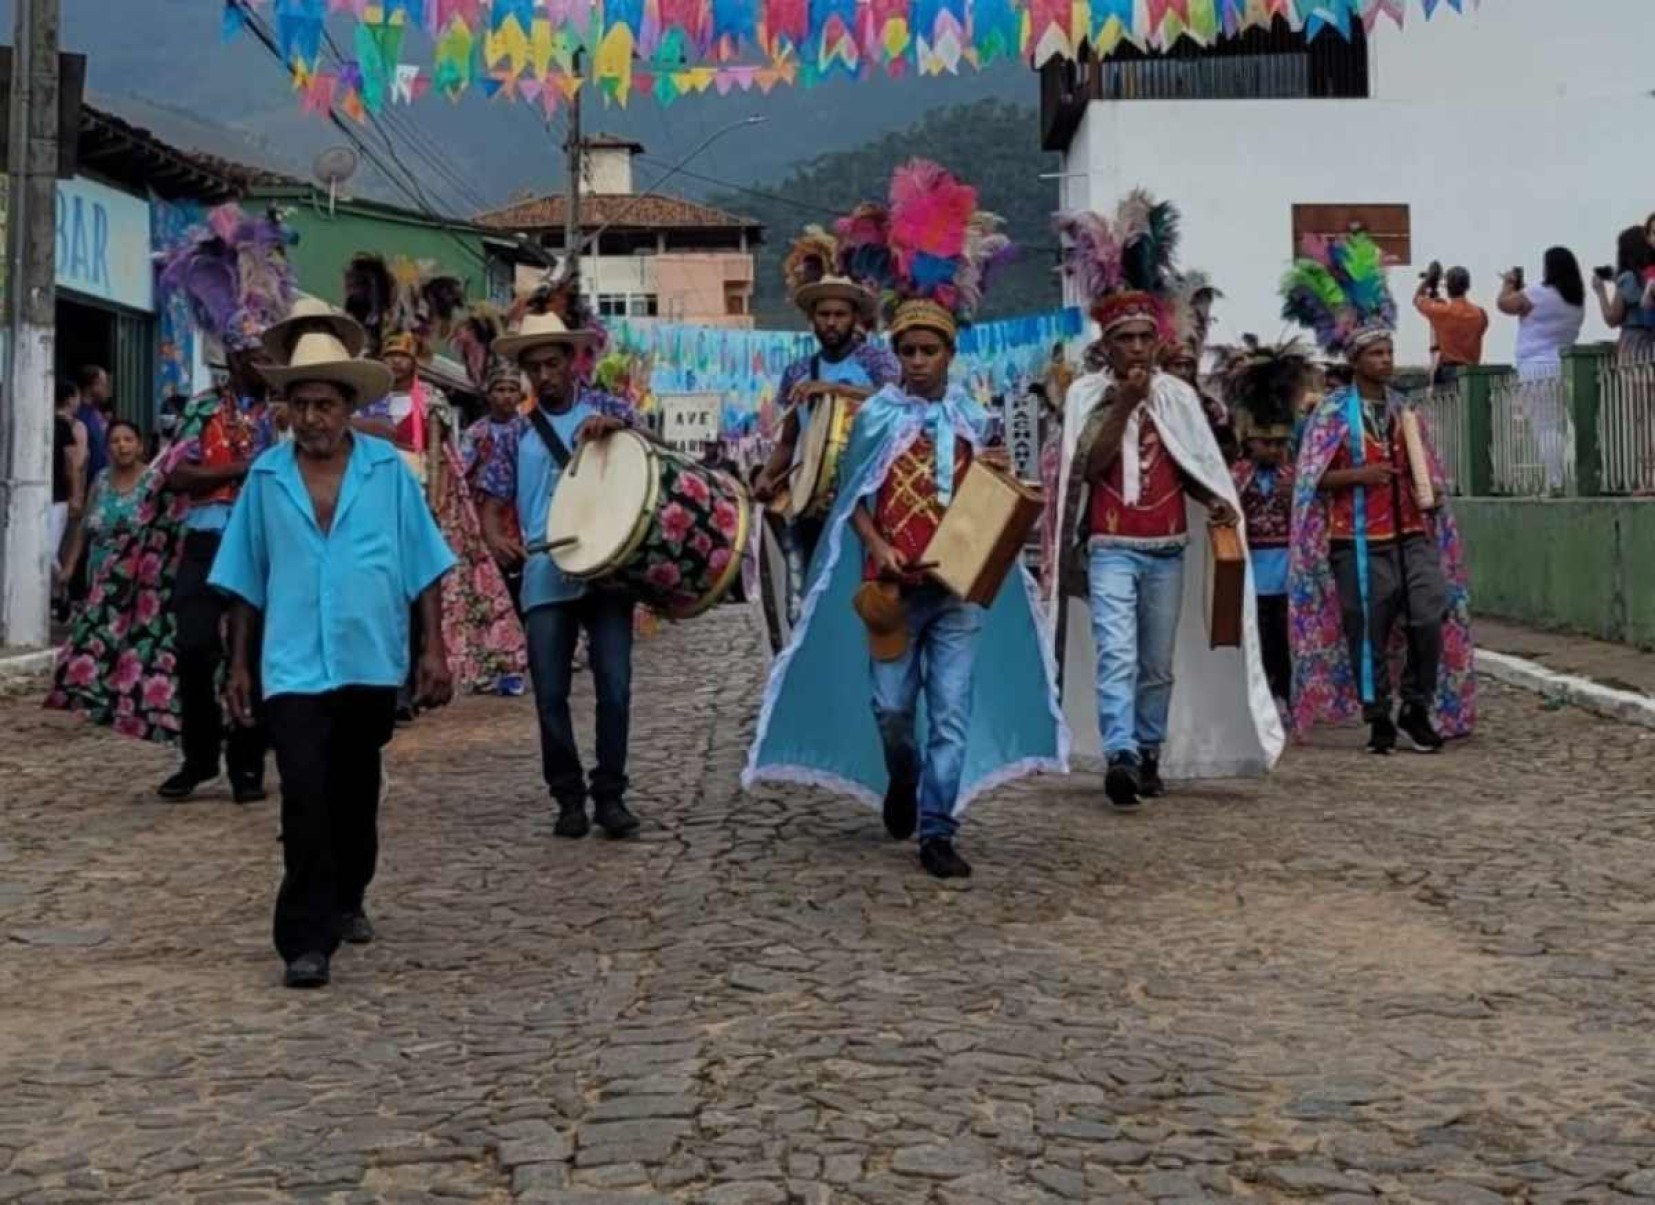 Rua ainda com os tradicionais paralelepípedos recebe manifestações culturais há décadas